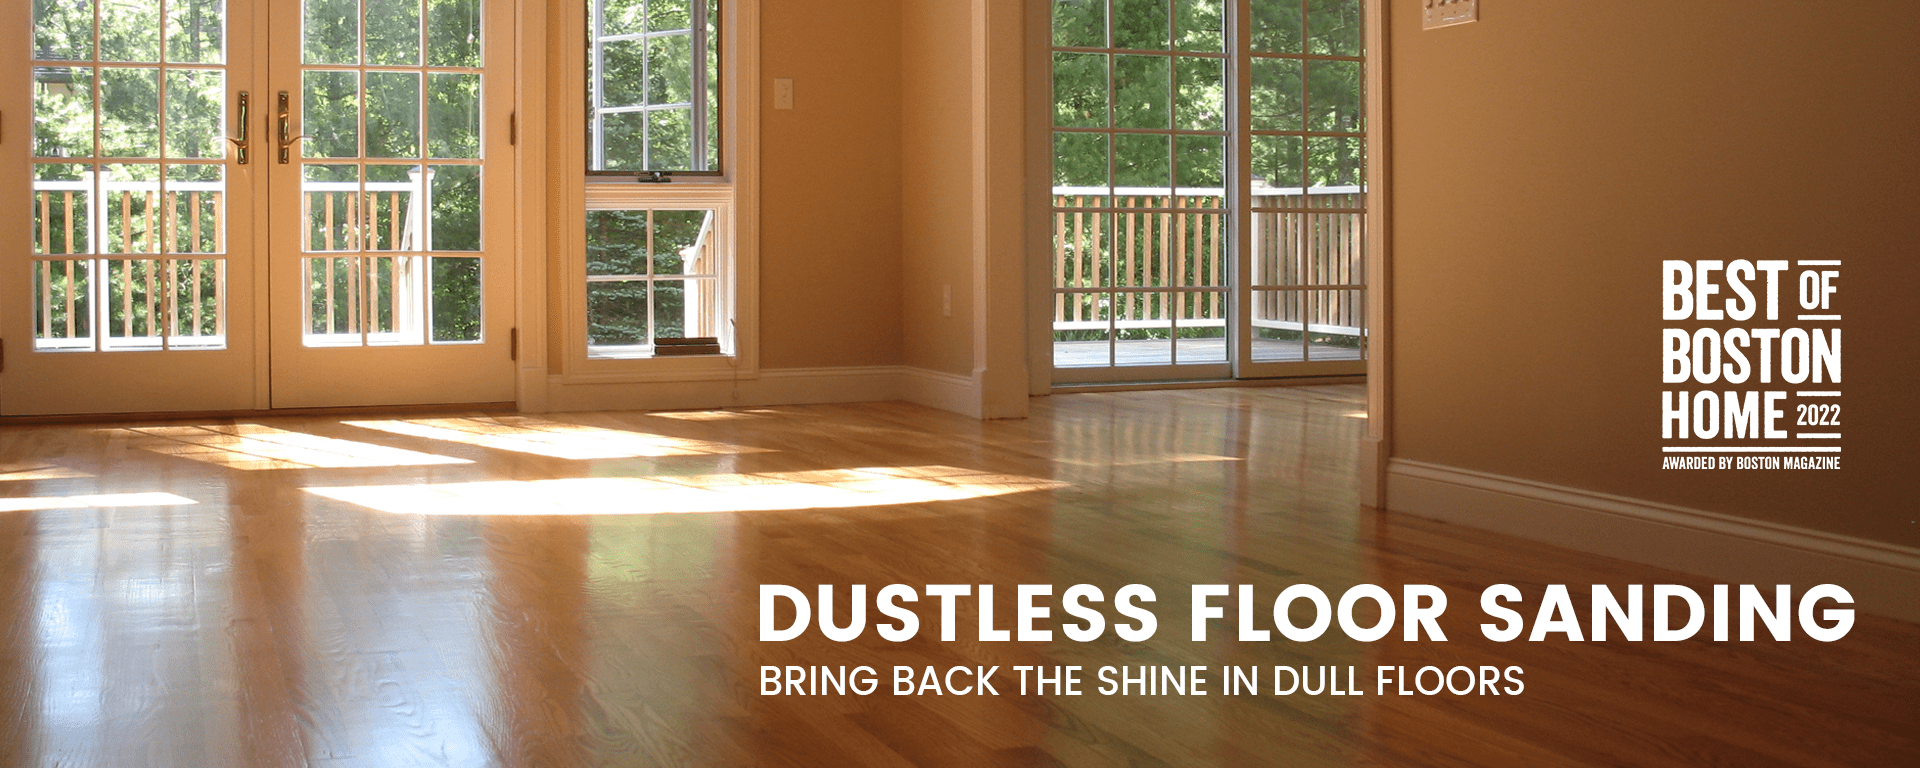 Dustless Floor Sanding